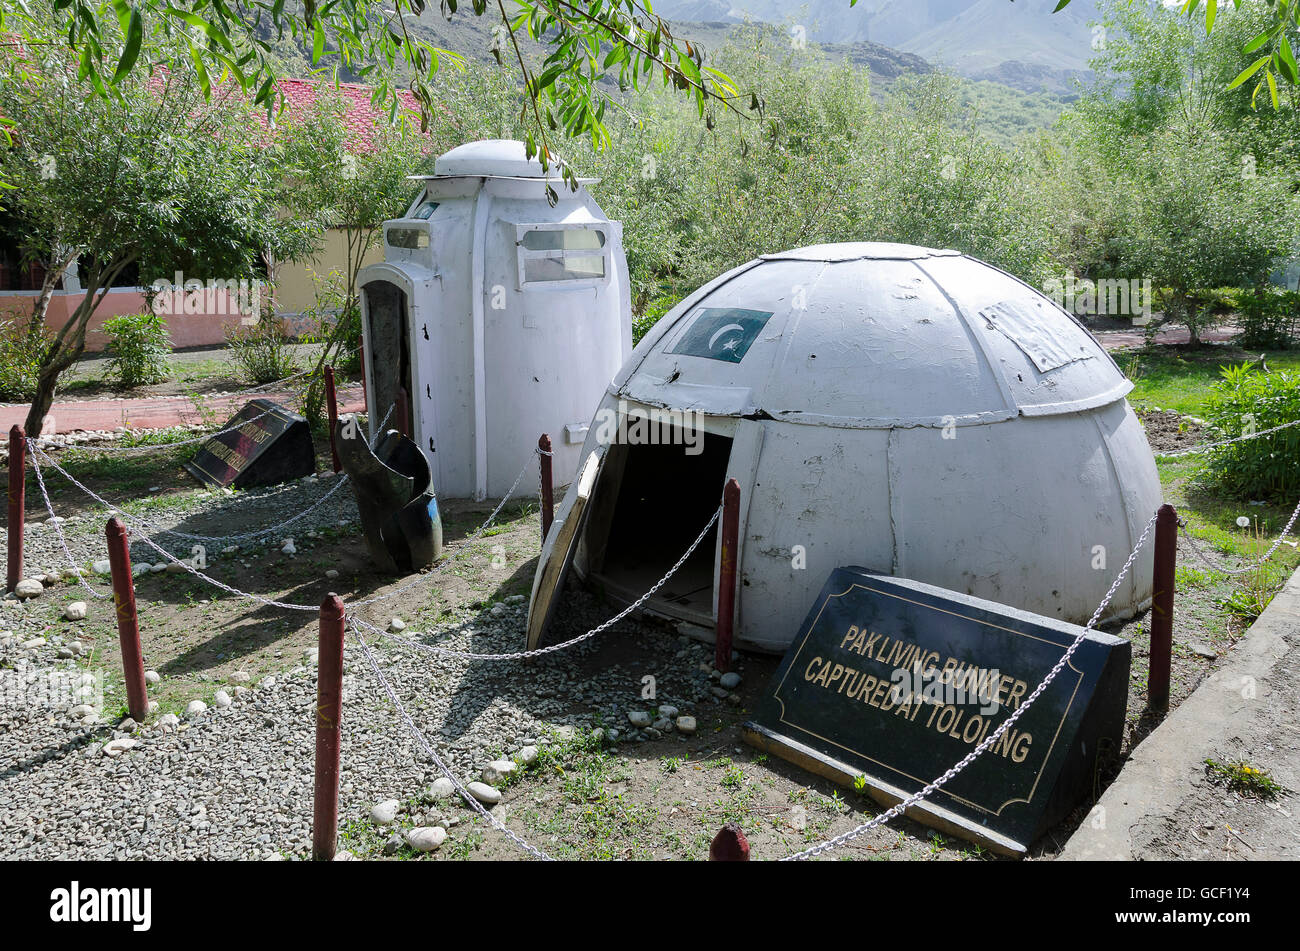 Pakistanische lebenden Bunker und Sentry Bunker, Kargil War Memorial, Bimbat, Leh, Srinagar Straße, Ladakh, Jammu und Kaschmir, Indien Stockfoto